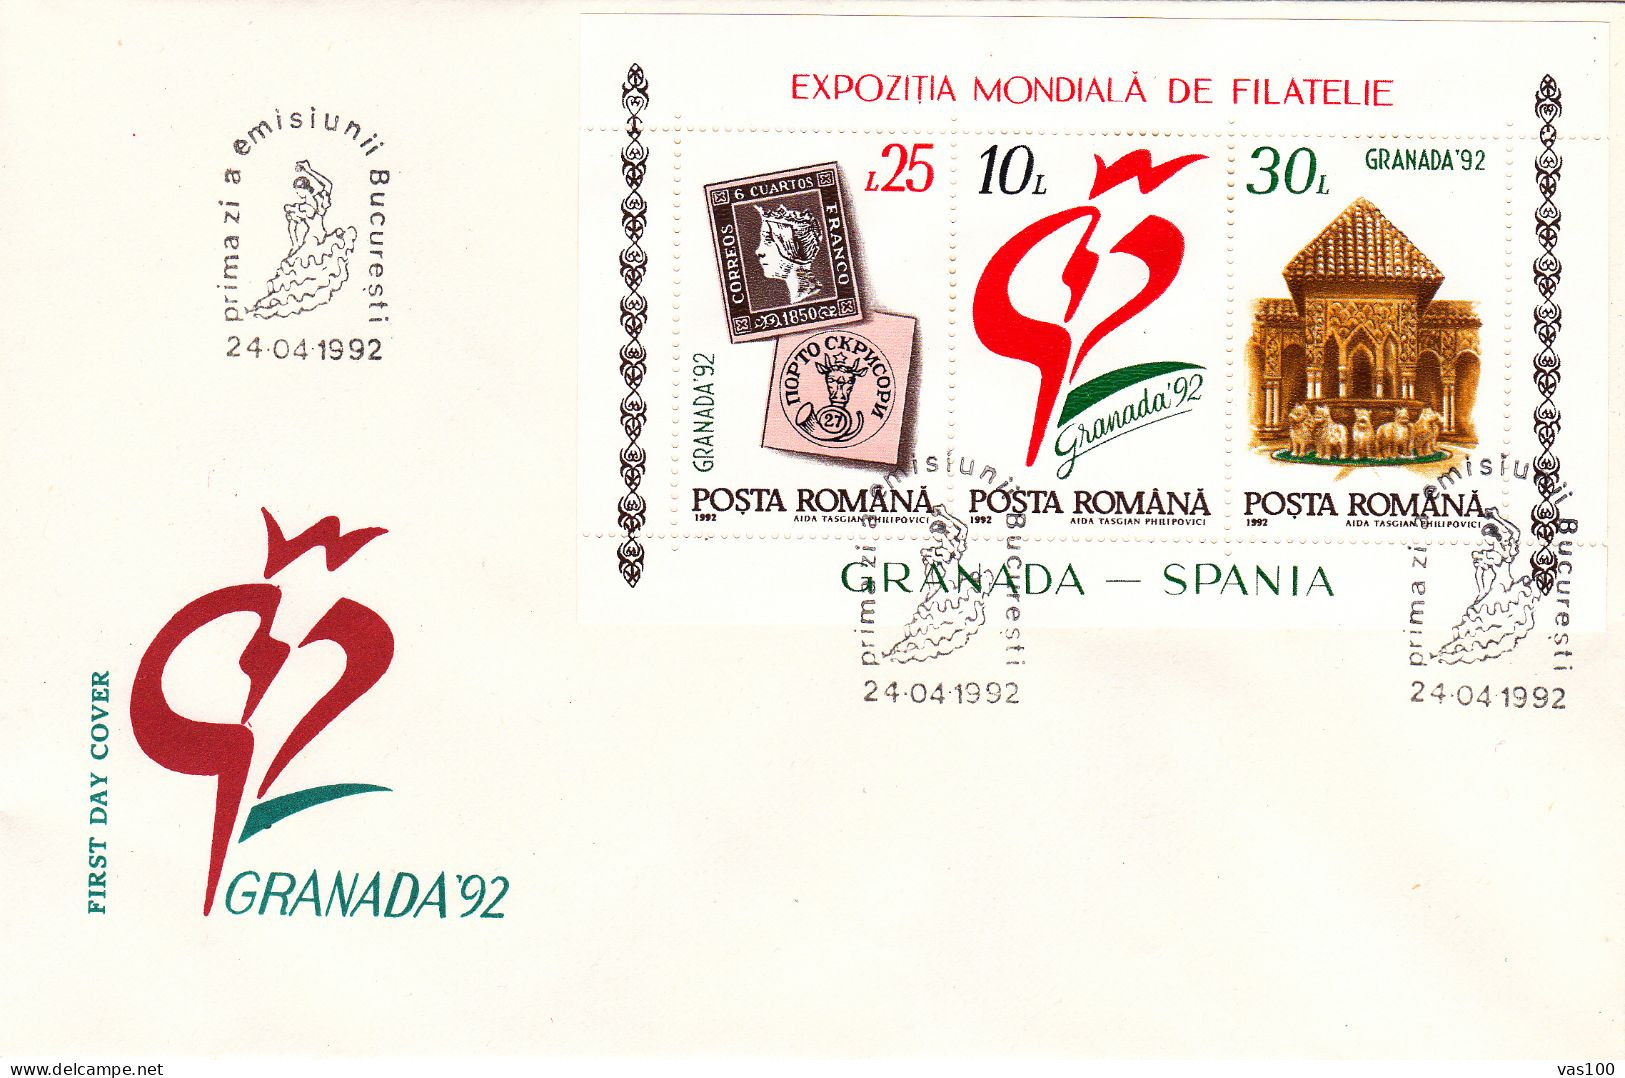 PHILATELIC EXHIBITION, GRANADA, 1992, COVER FDC, ROMANIA - FDC